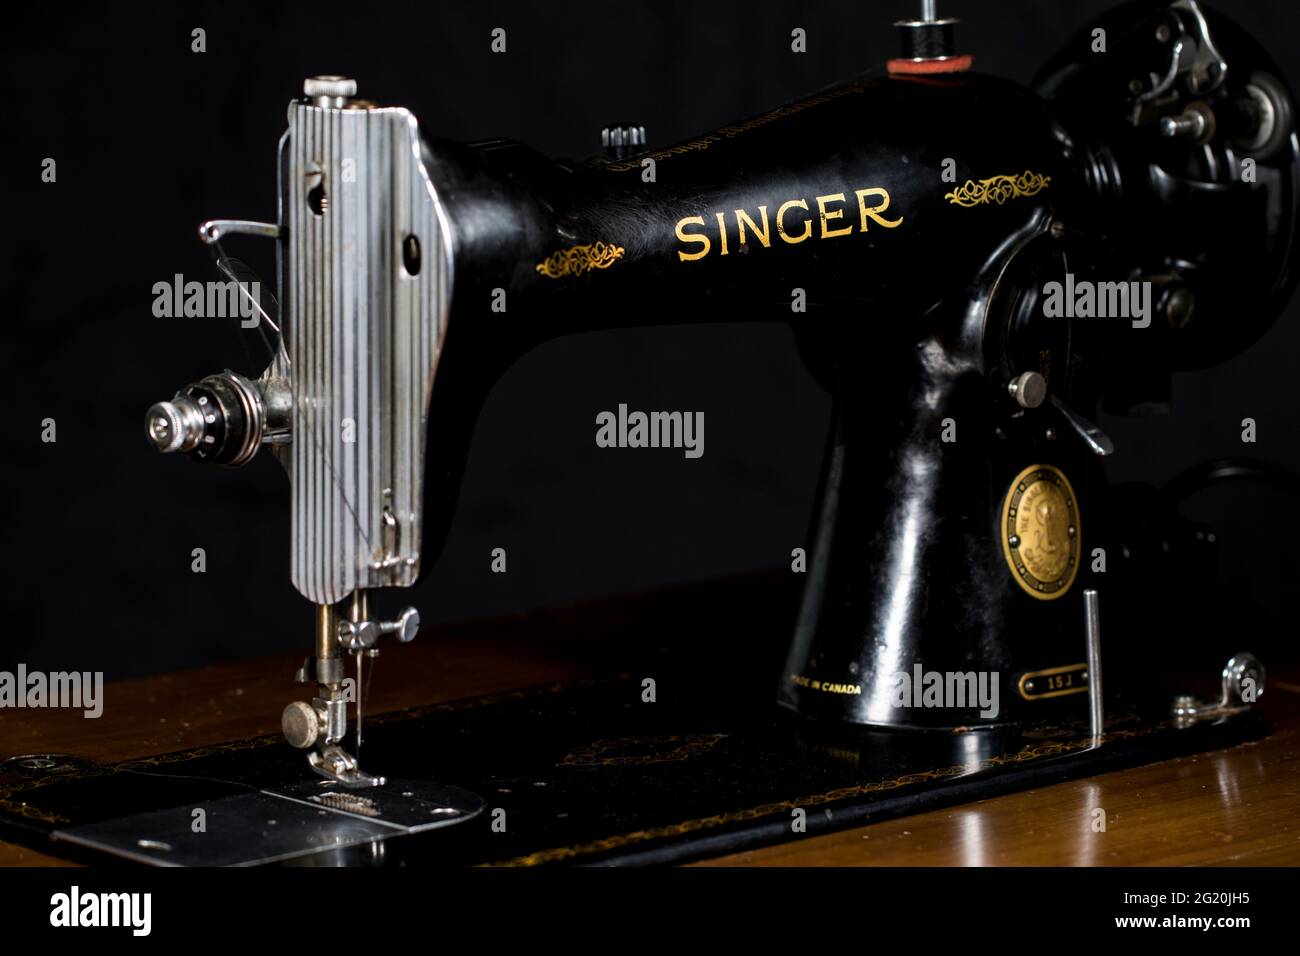 Singer sewing machine -Fotos und -Bildmaterial in hoher Auflösung - Seite 3  - Alamy